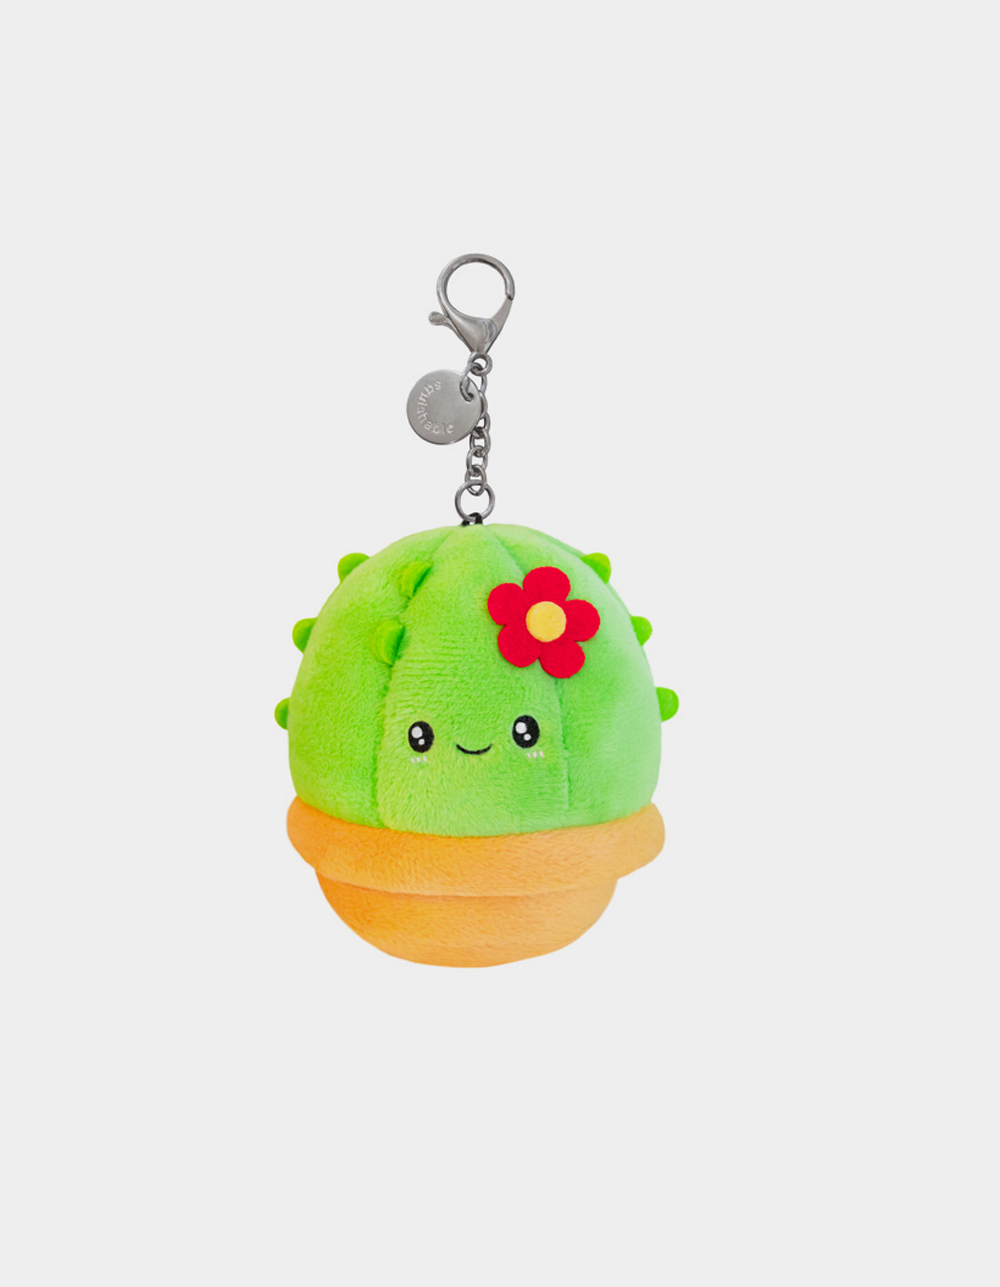 SQUISHABLE Micro Cactus Plush Keychain